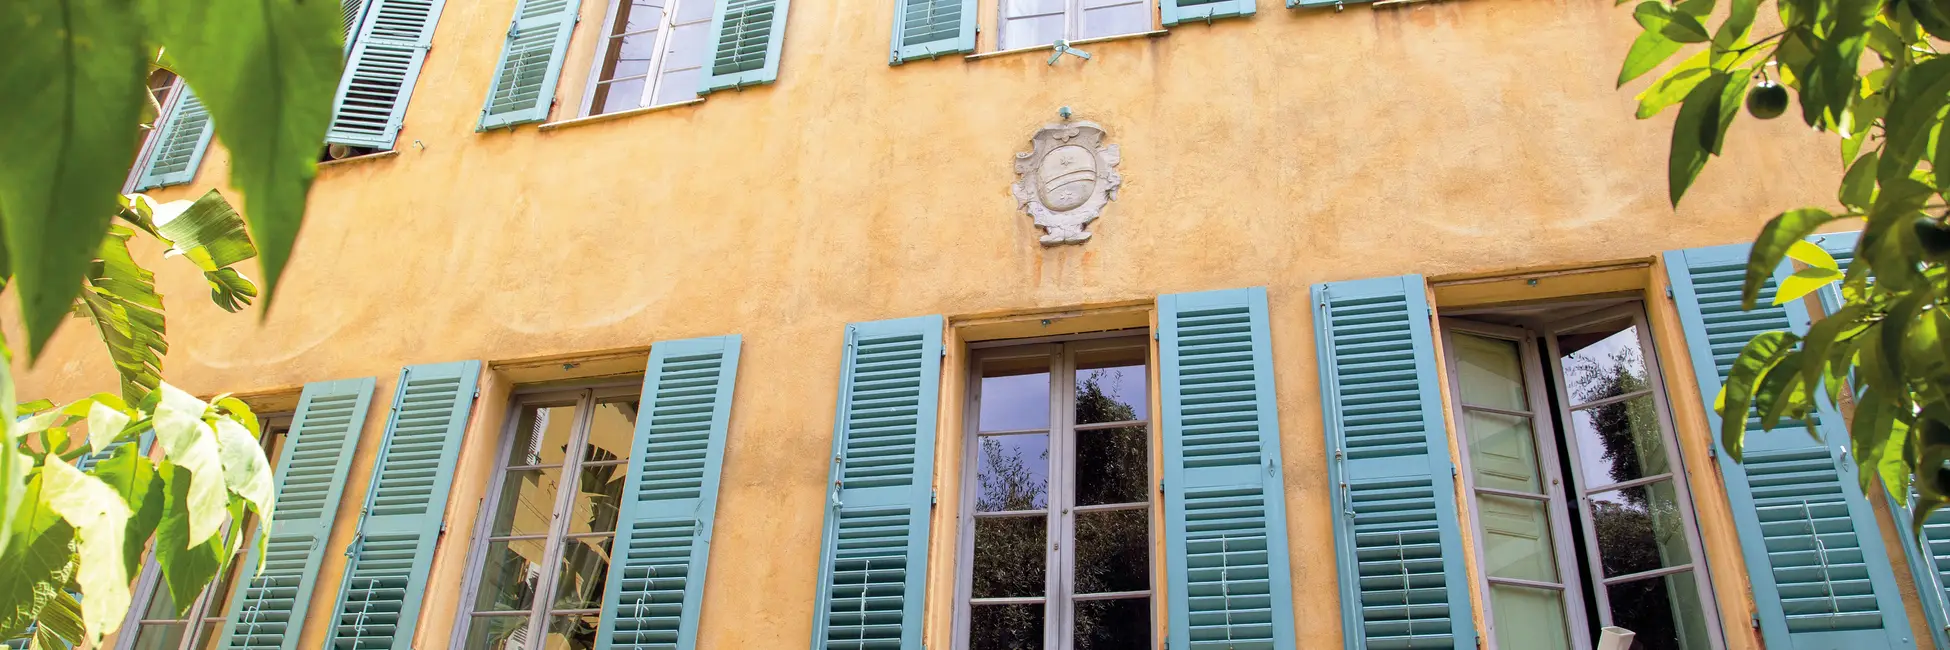 La maison Bonaparte d'Ajaccio 